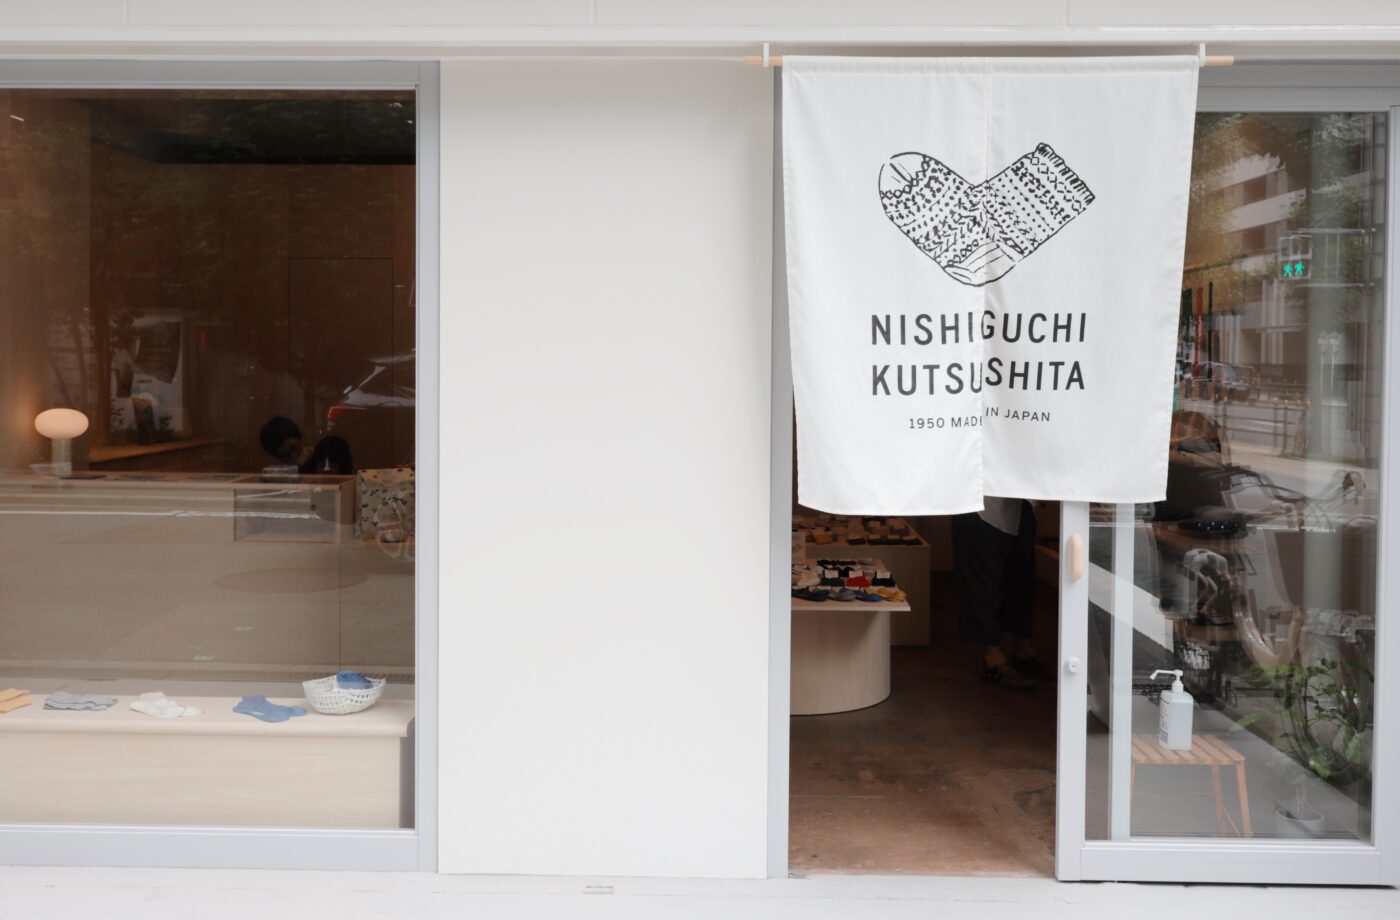 ファクトリー生まれの靴下ブランド「NISHIGUCHI KUTSUSHITA」。初の実店舗が南船場にオープン。